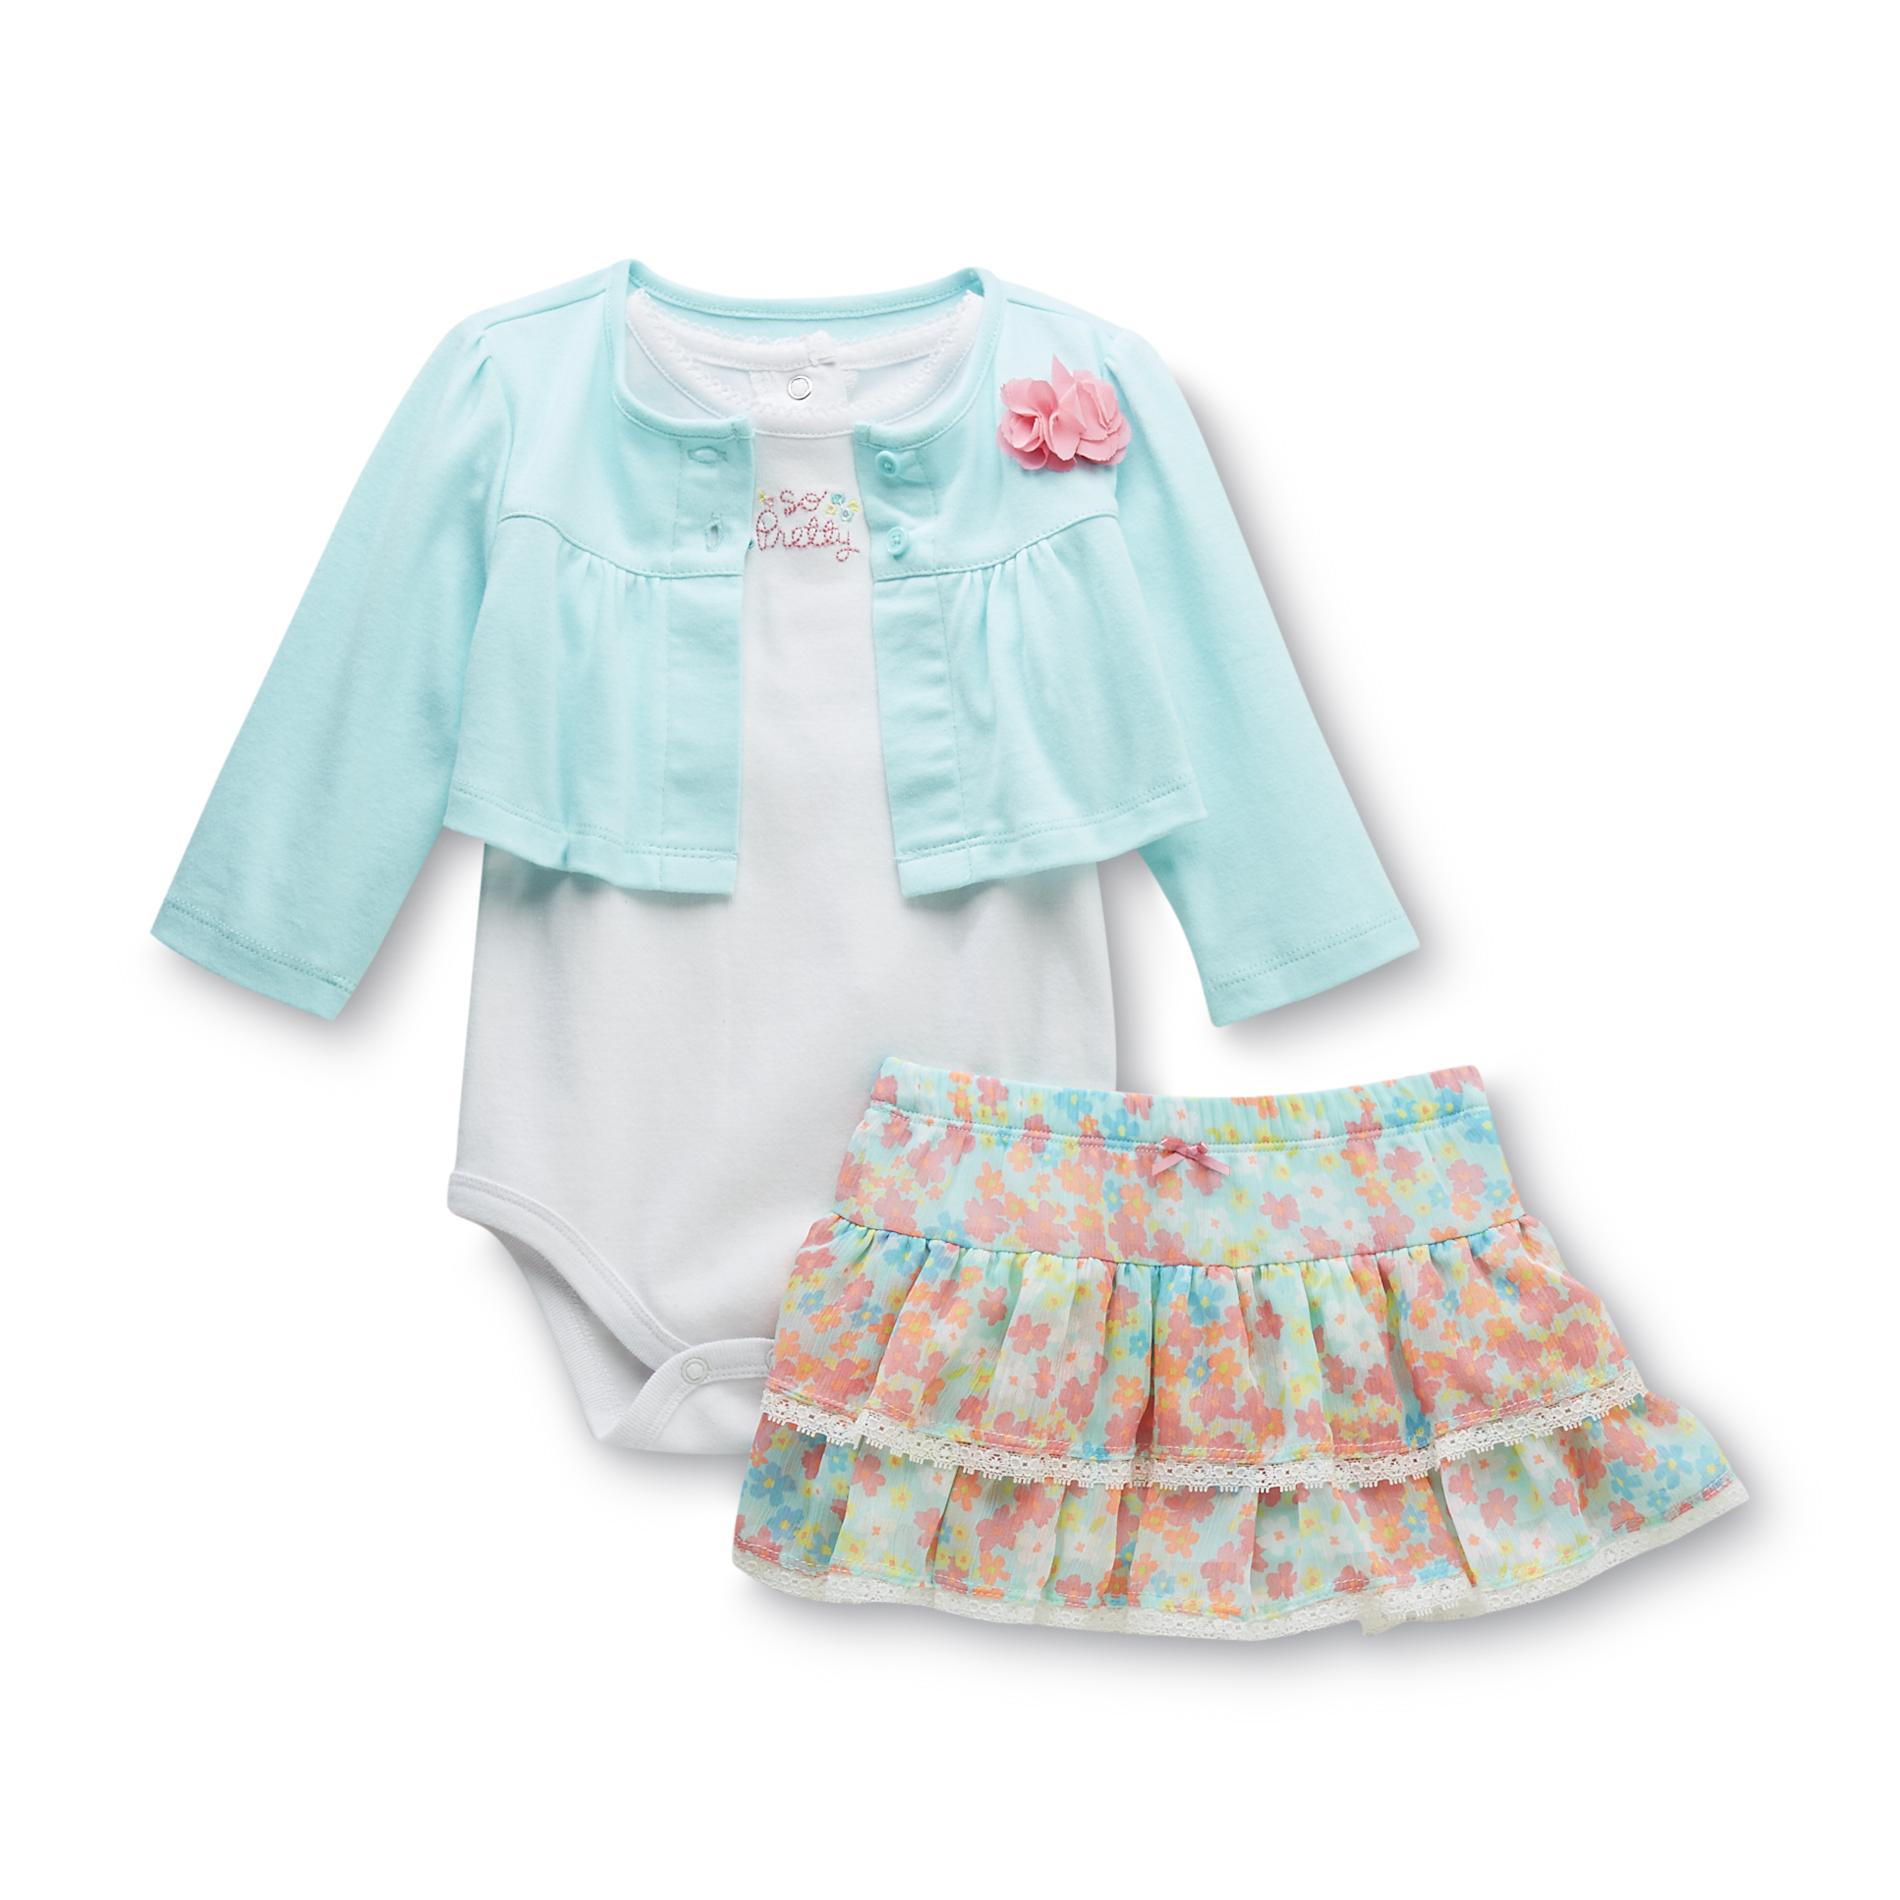 Little Wonders Newborn & Infant Girl's Bodysuit  Jacket & Skirt - Floral Print